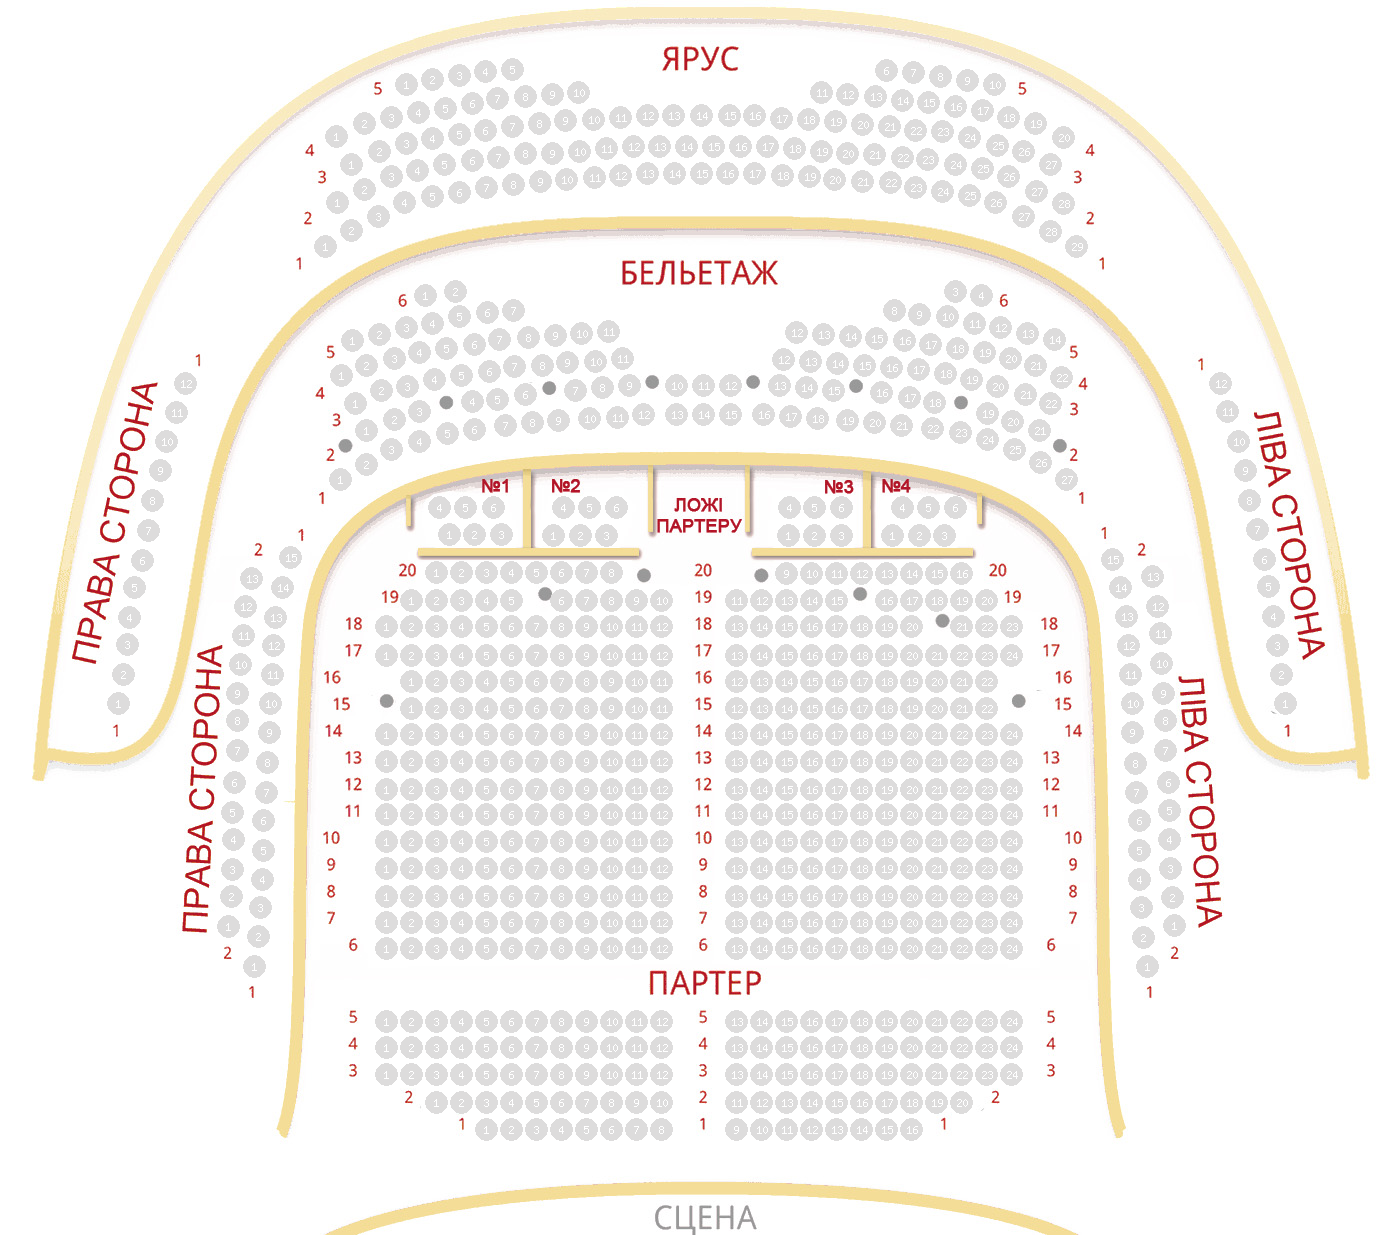 Театр оперетты схема зала